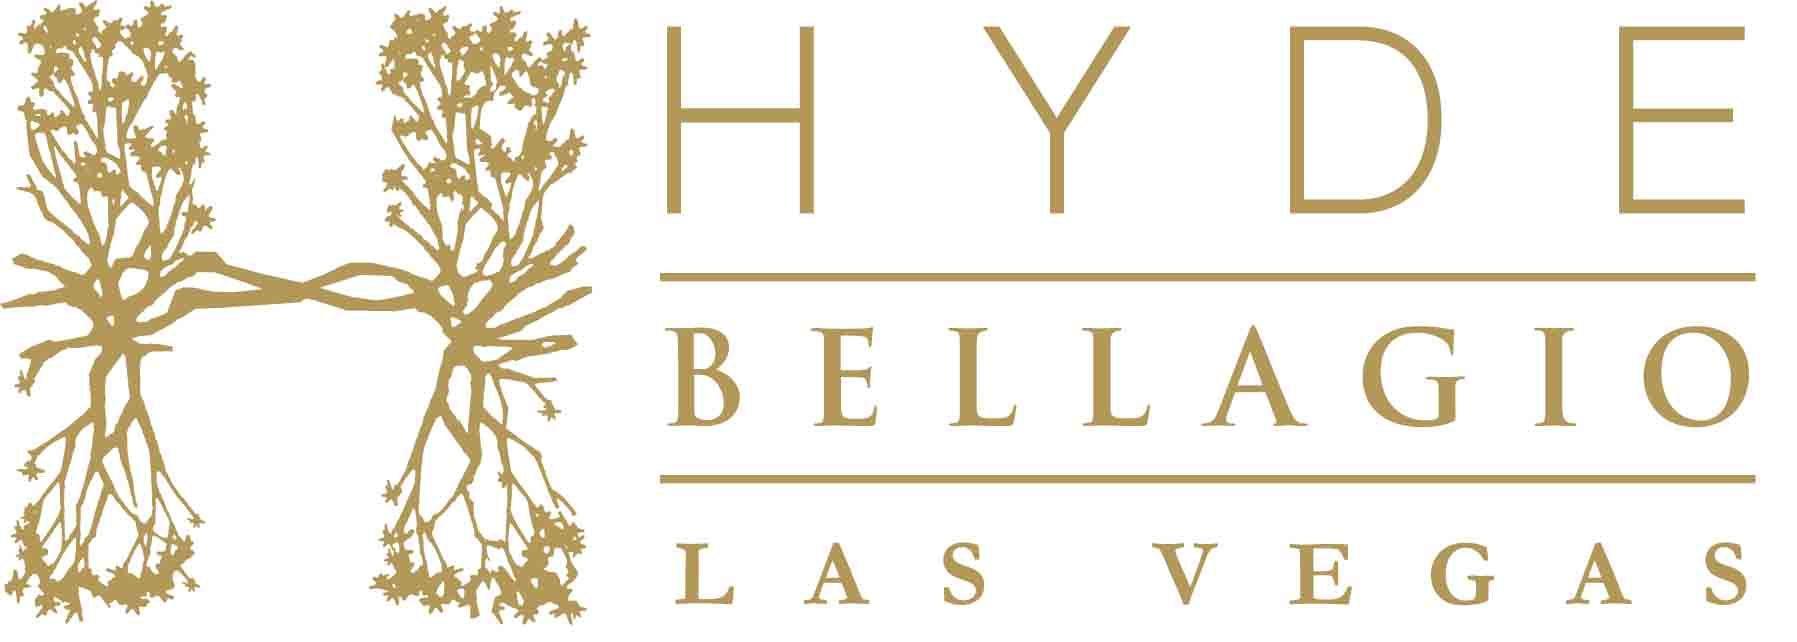 Bellagio Logo - Hyde Bellagio Logo | Vegas Legal Magazine